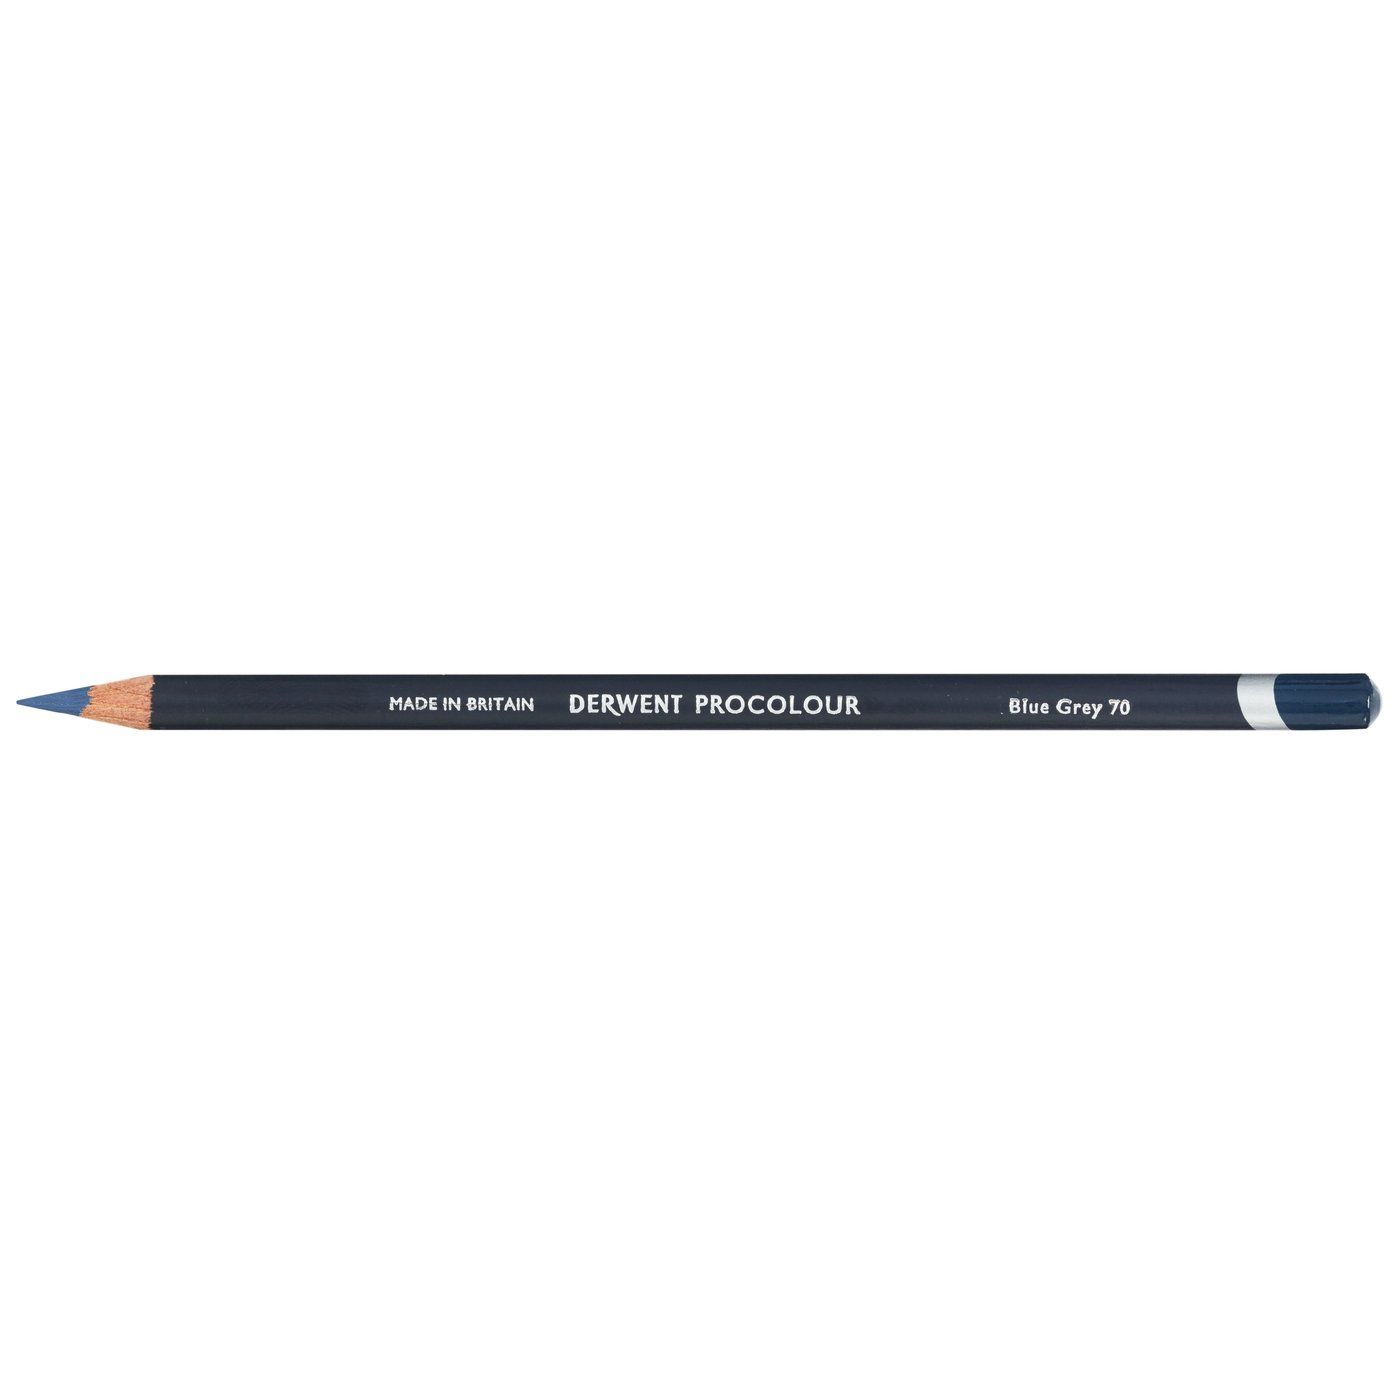 Derwent Procolour Pencil - 70 Blue Grey